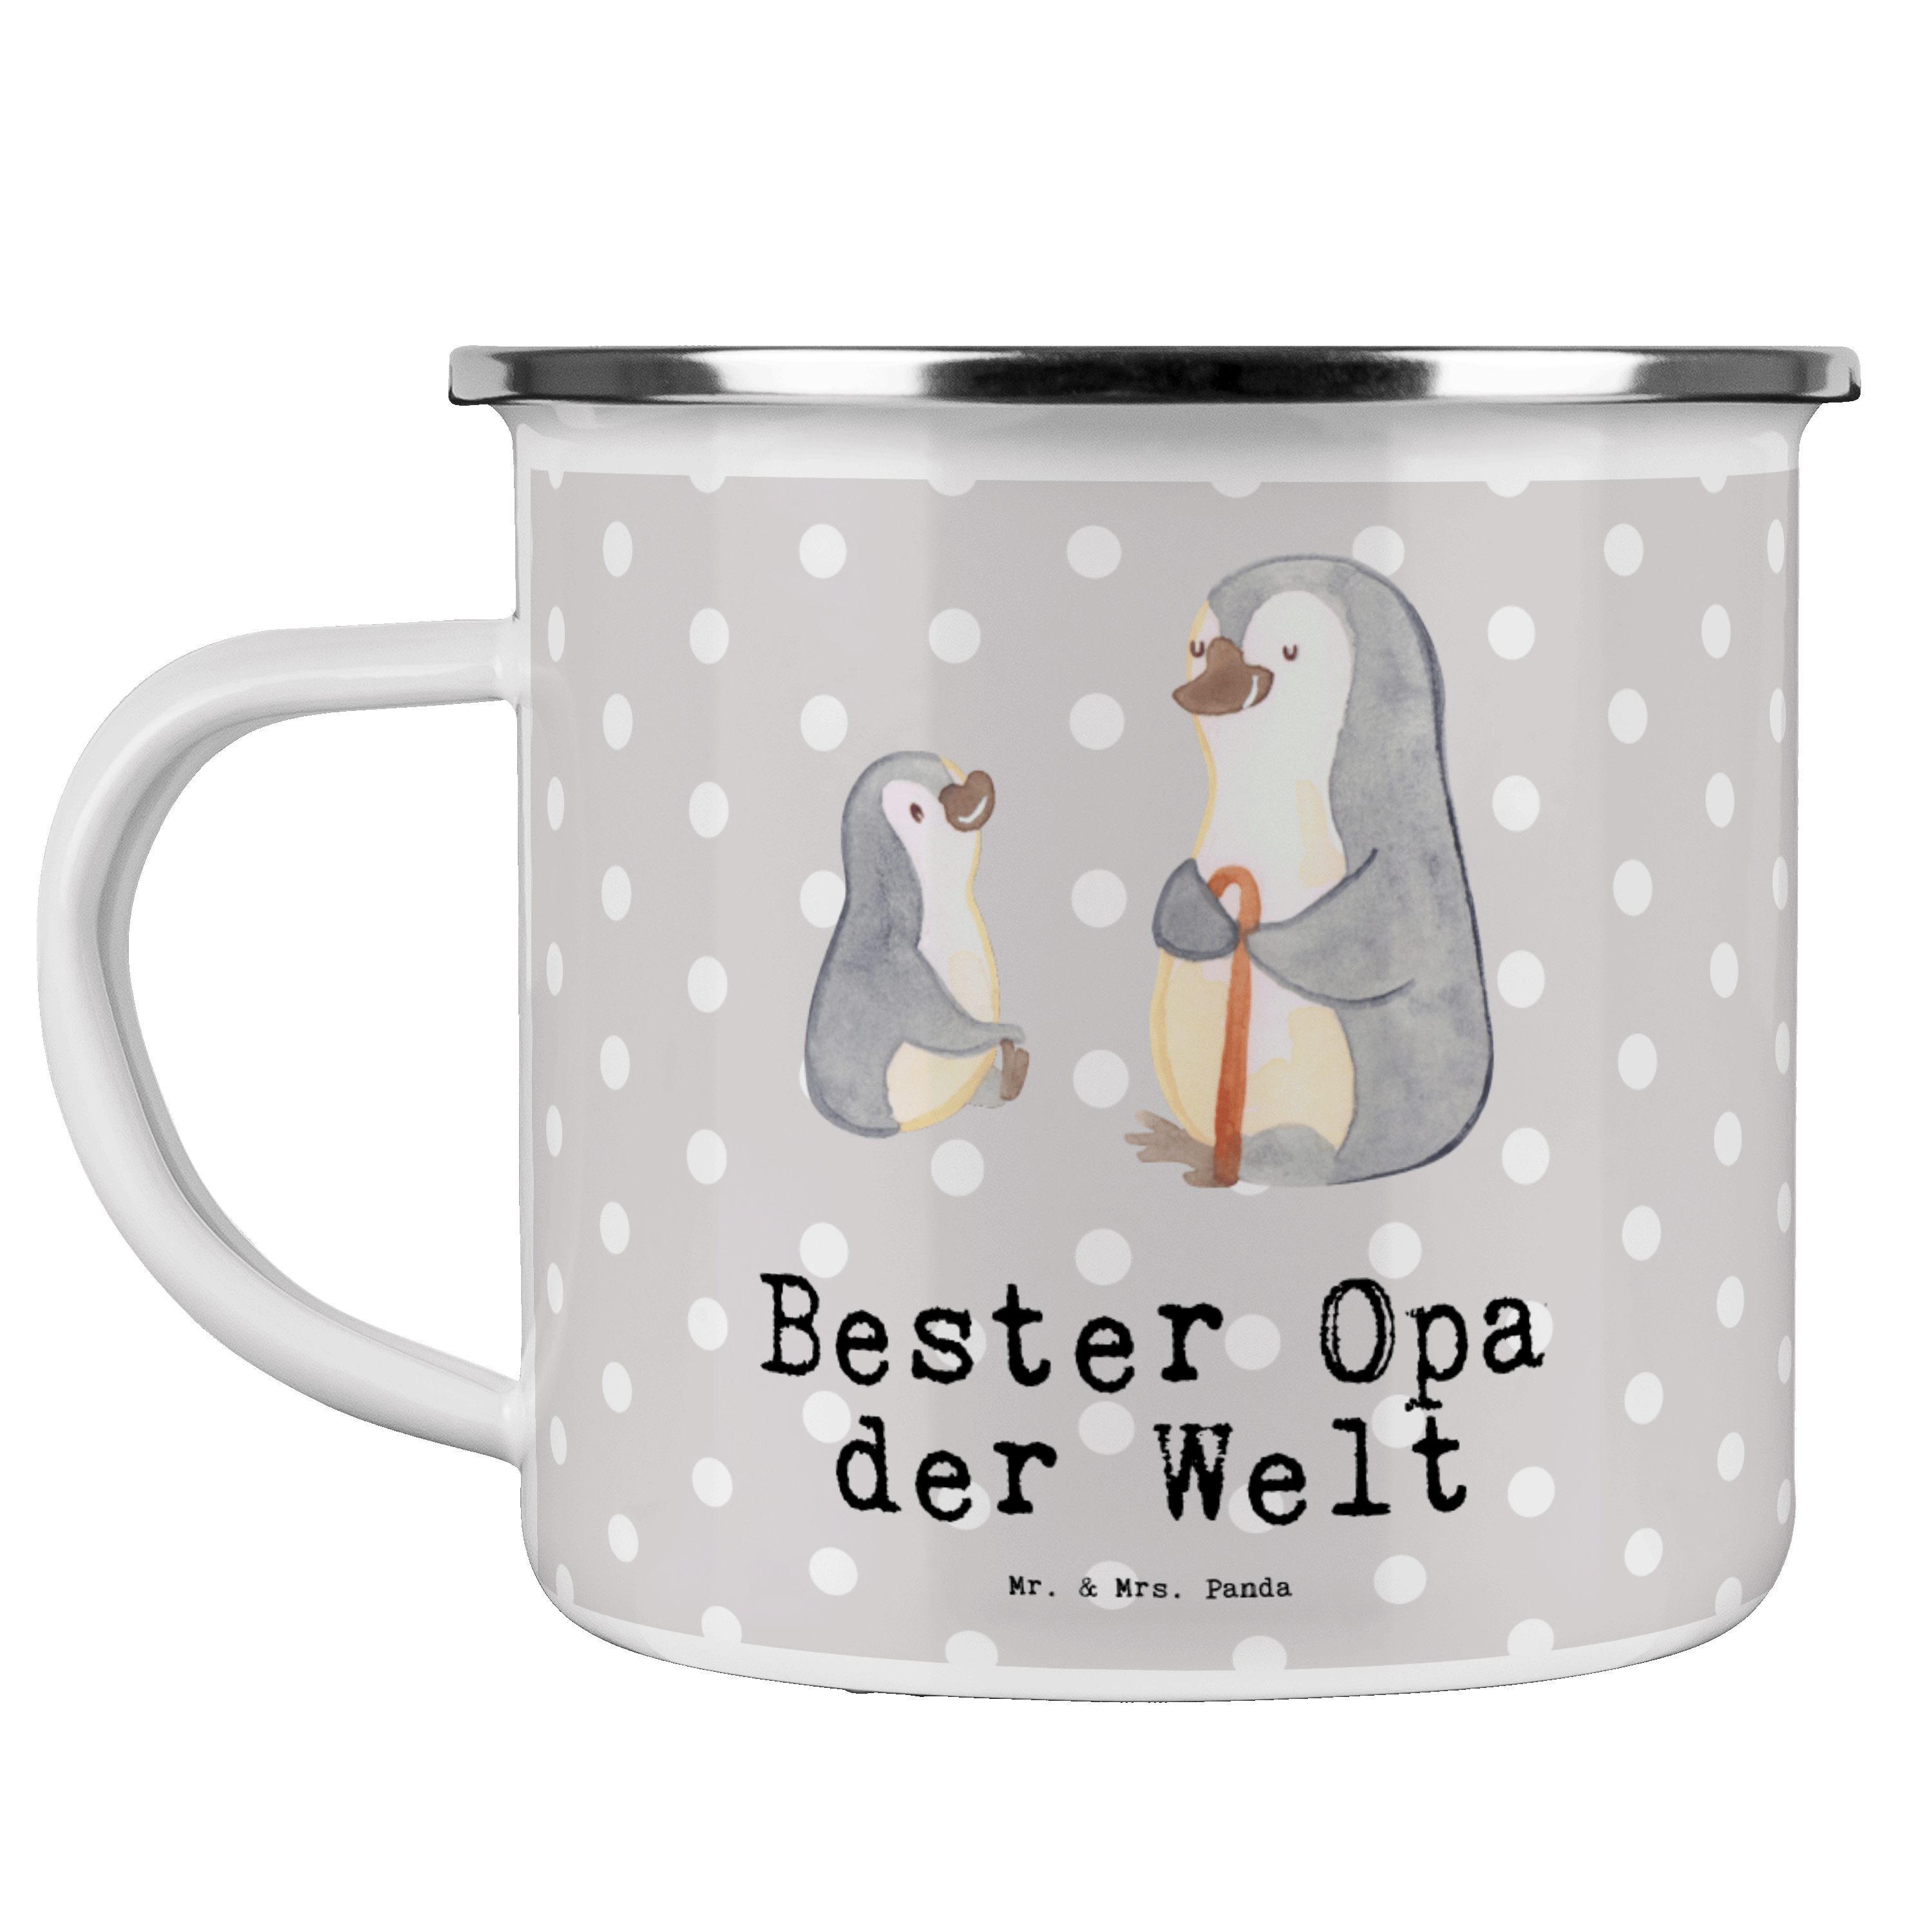 Mr. & Mrs. Panda Becher Pinguin Bester Opa der Welt - Grau Pastell - Geschenk, Geschenktipp, Emaille